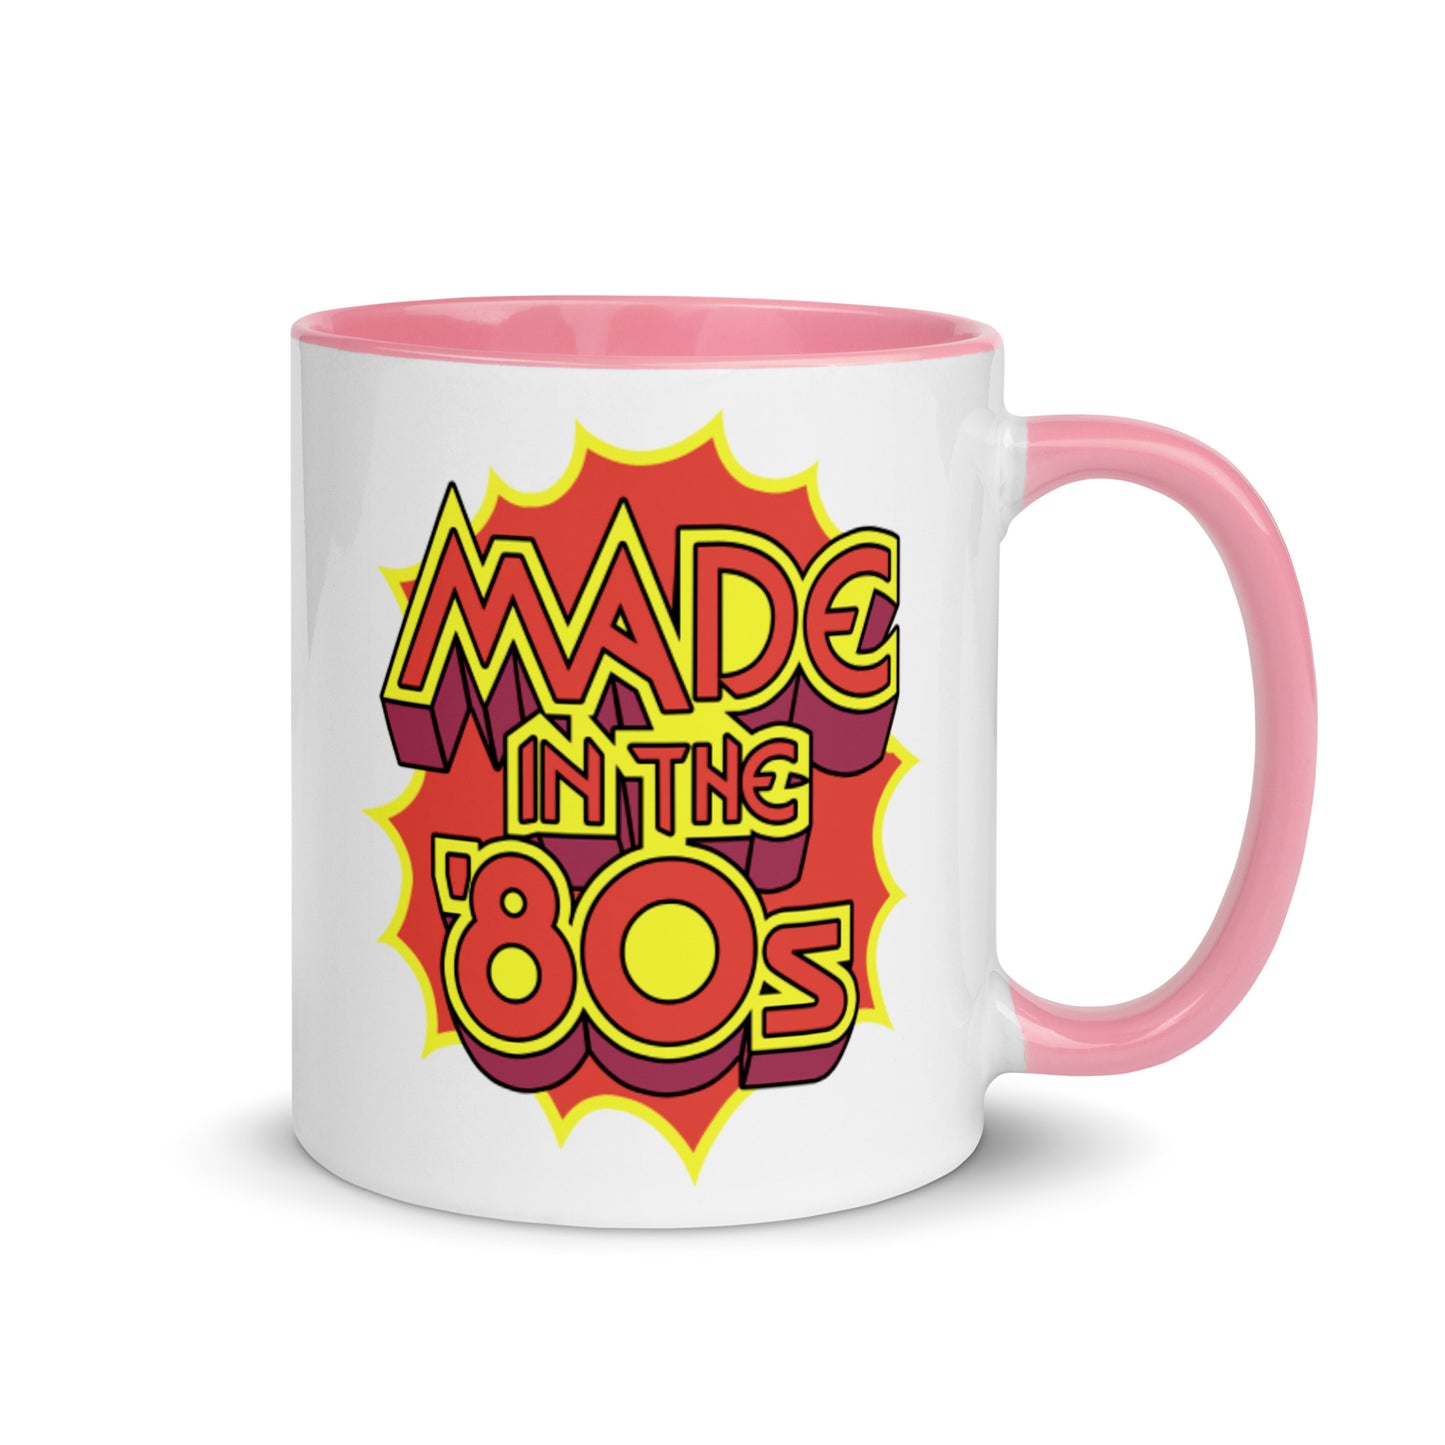 Made in the '80s 2-color ceramic mug